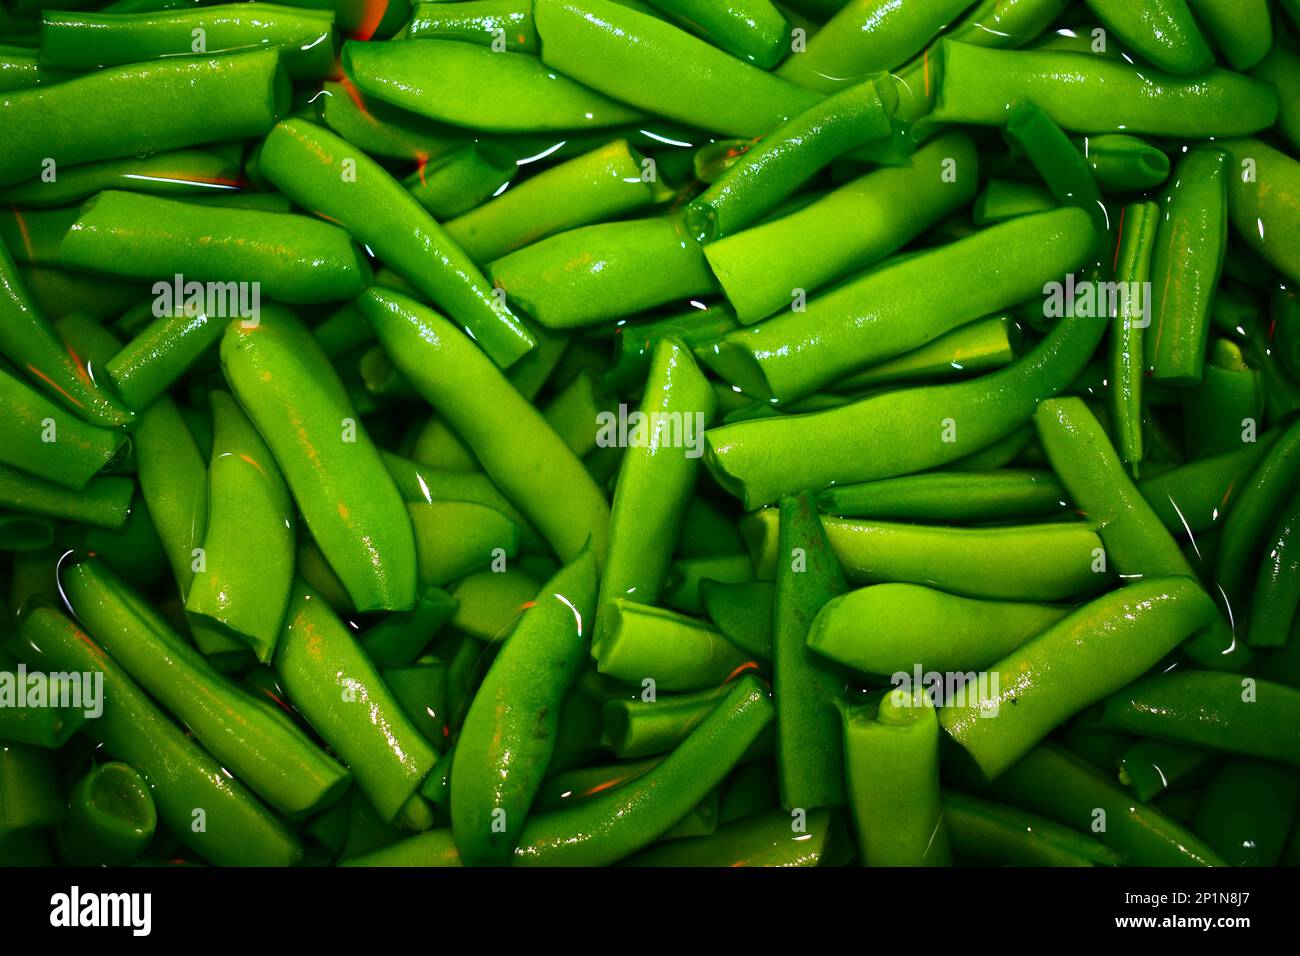 Grüne Bohnen, die in einem Garten im ländlichen Missouri, MO, USA, USA, USA, Gerissen, gereinigt und fertig zum Kochen oder Konservieren. Wird in lebendigen Farben angezeigt. Stockfoto